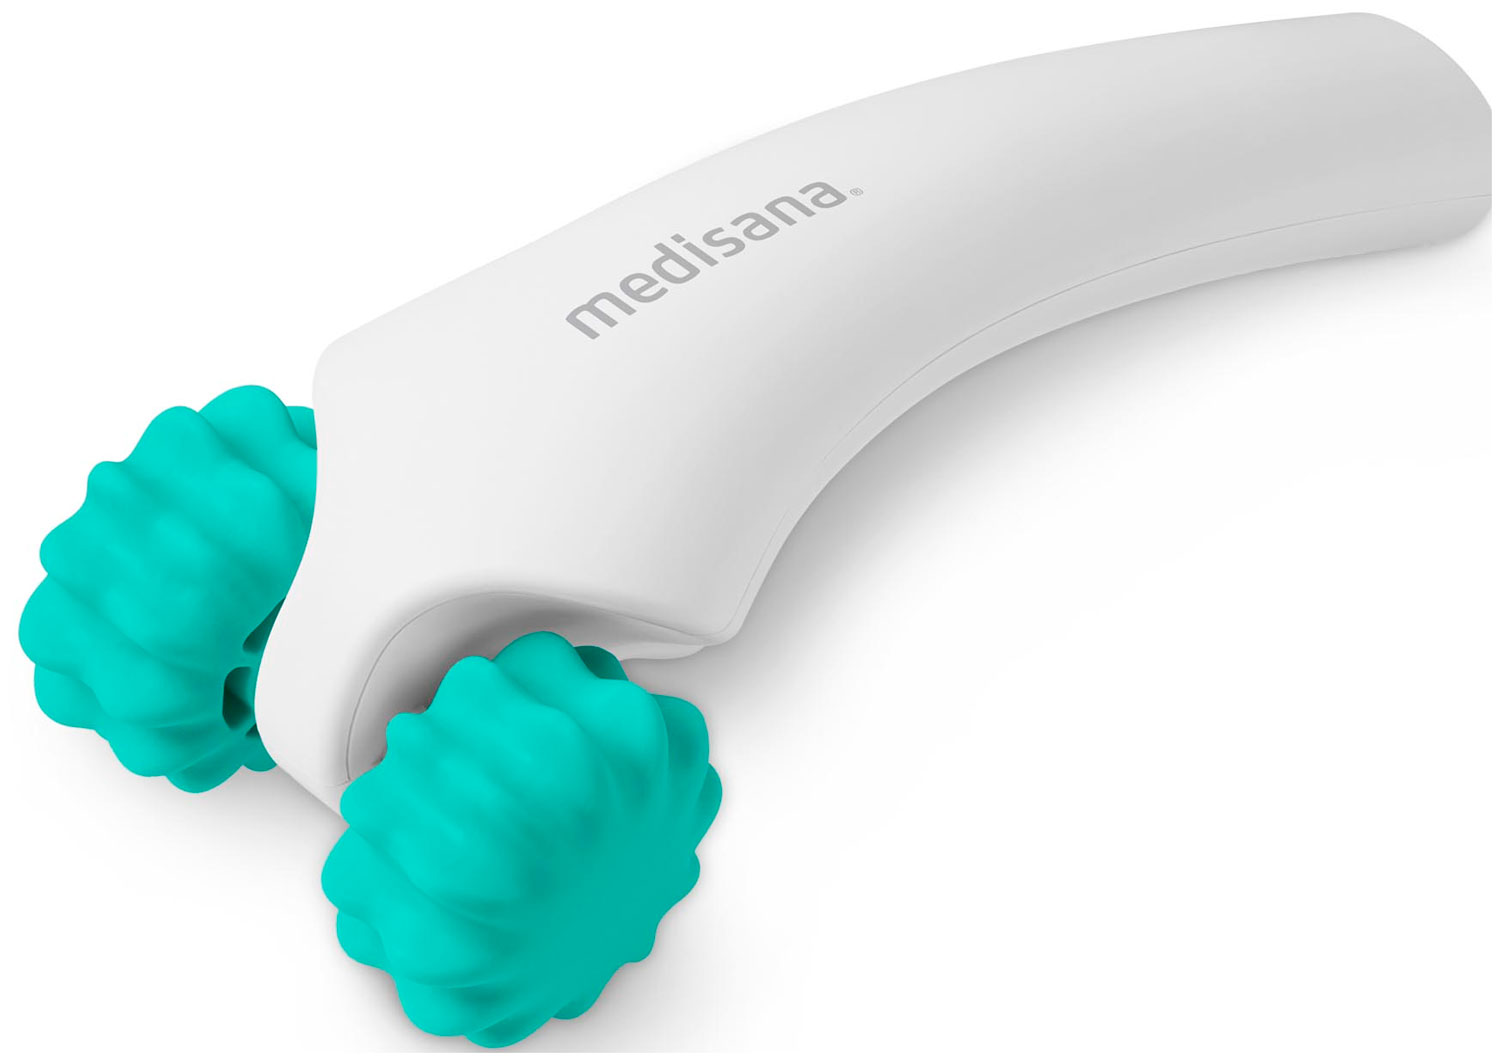 Ручной роликовый массажер для тела Medisana HM 630 полимерный семейный массаж ног для триггерной терапии педикюрный массажер для тела инструмент для улучшения циркуляции крови гуаша доск